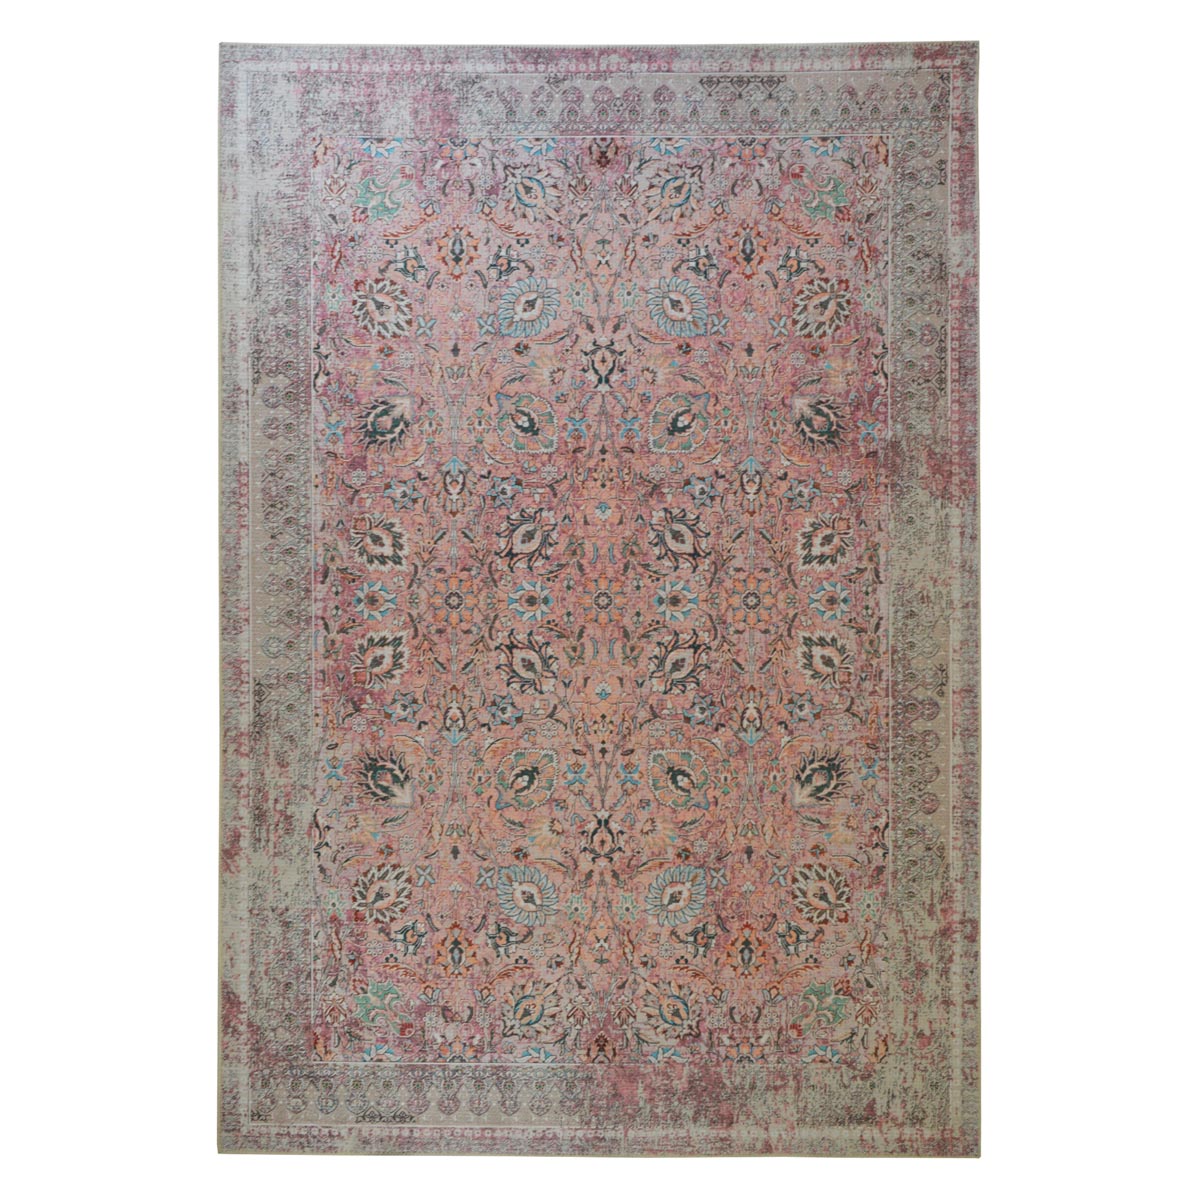 Tapis ethnique berbère en polyester rose 120x180